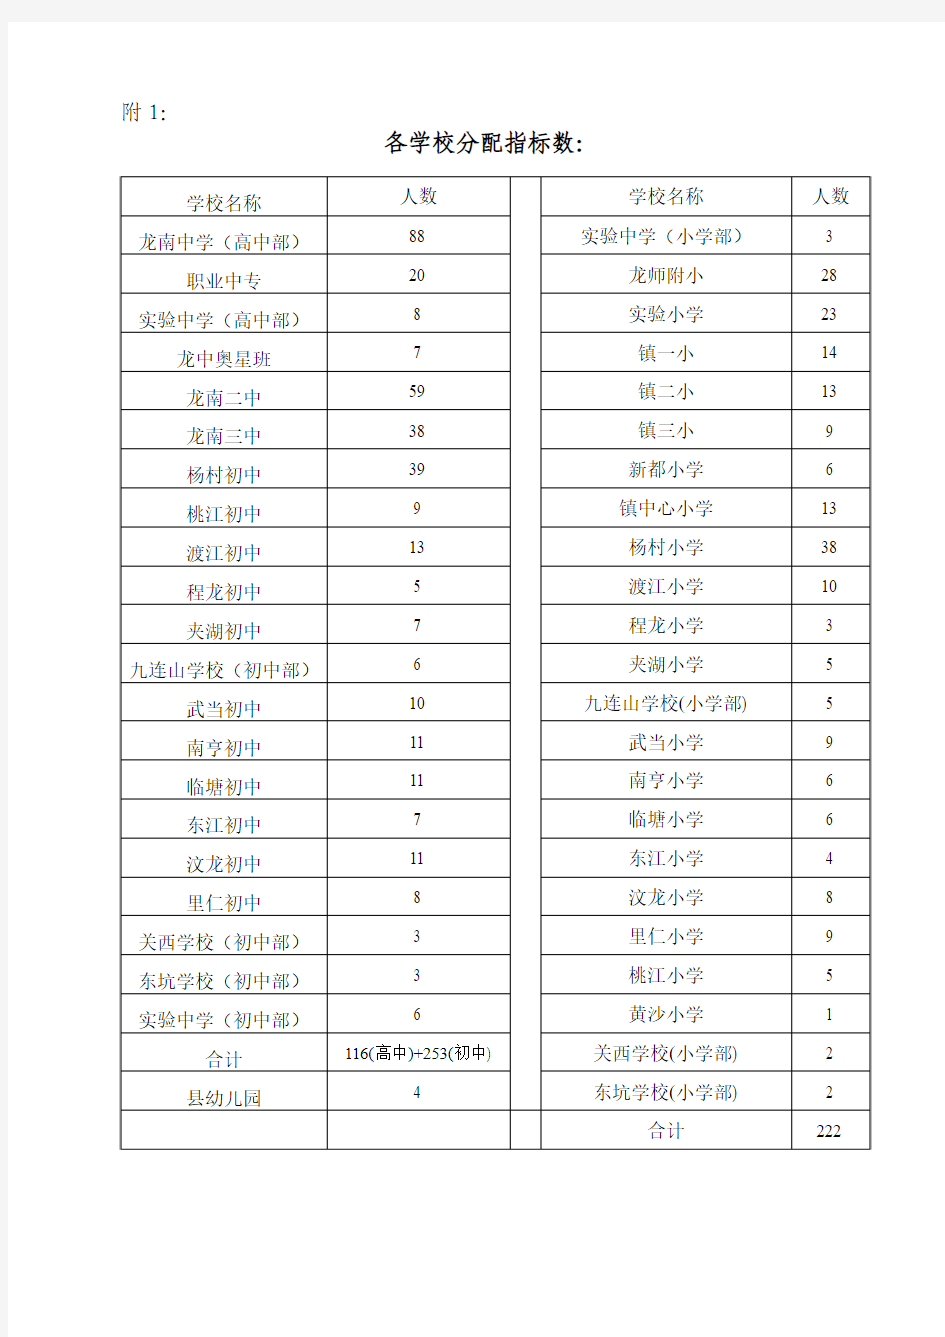 龙南县中小学学科带头人和骨干教师培养登记表